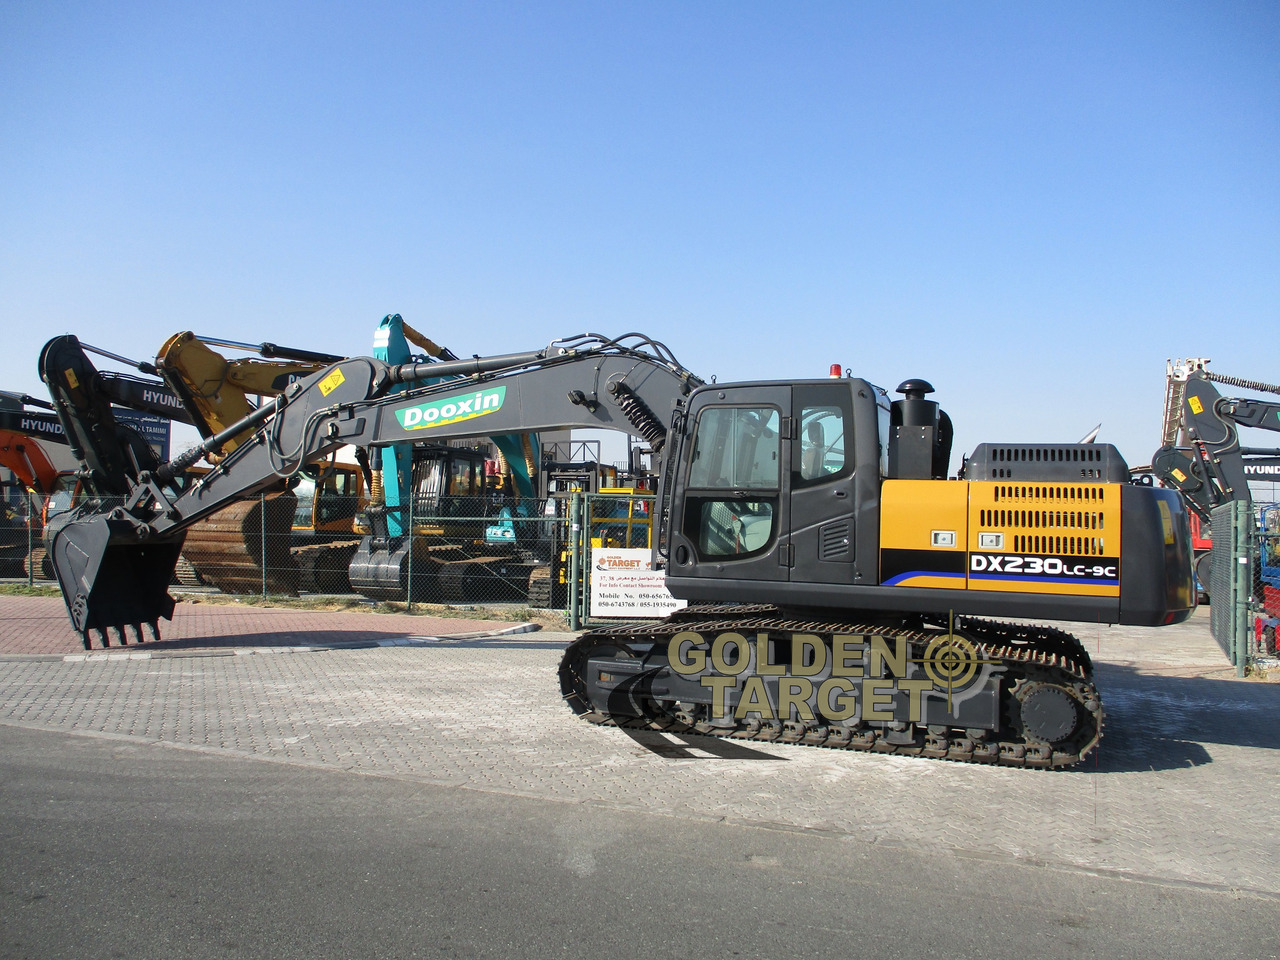 جديدة حفارة Dooxin DX230PC-9 Hydraulic Excavator: صورة 6